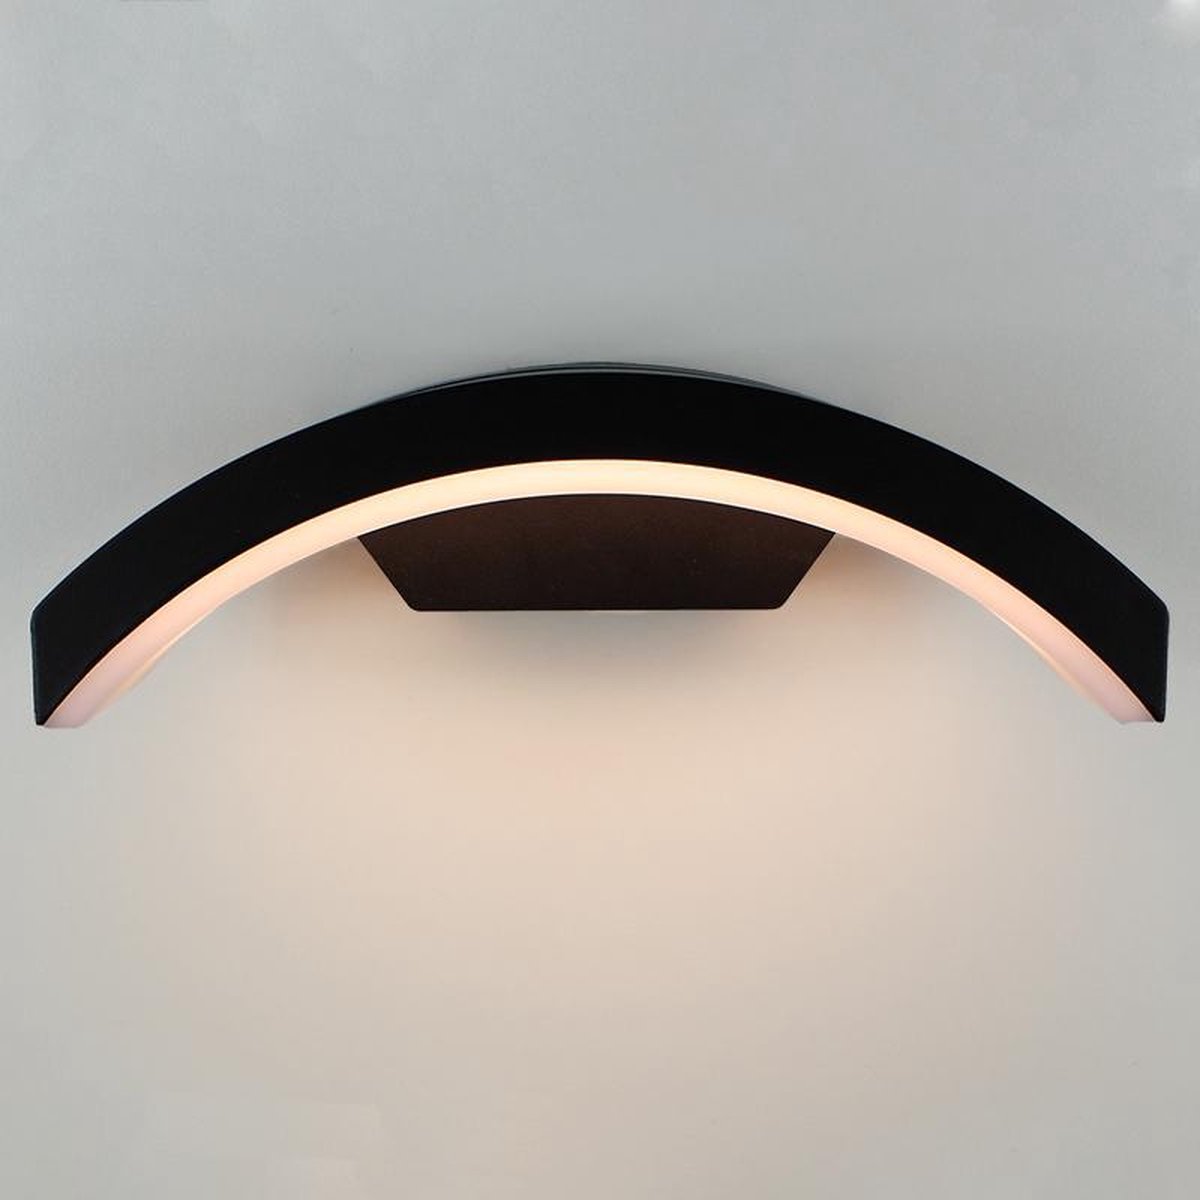 Buitenlamp Myra | Geïntegreerd LED | 6 watt | 3000K modern warm wit | IP54 | Mat zwart